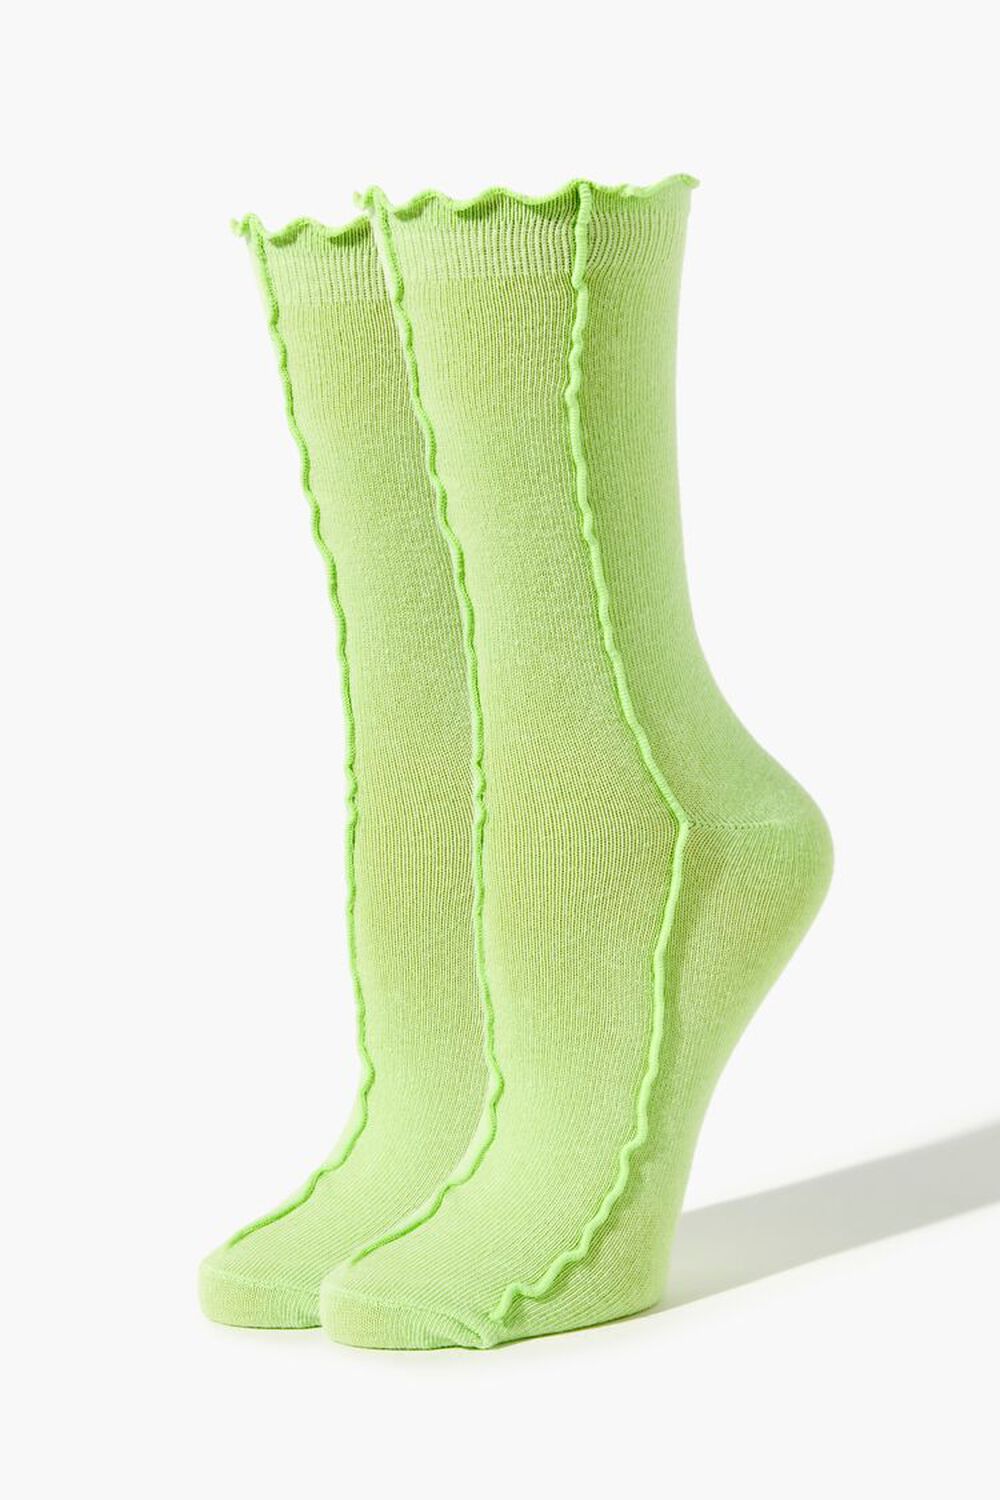 GREEN Lettuce-Edge Seamed Crew Socks, image 1